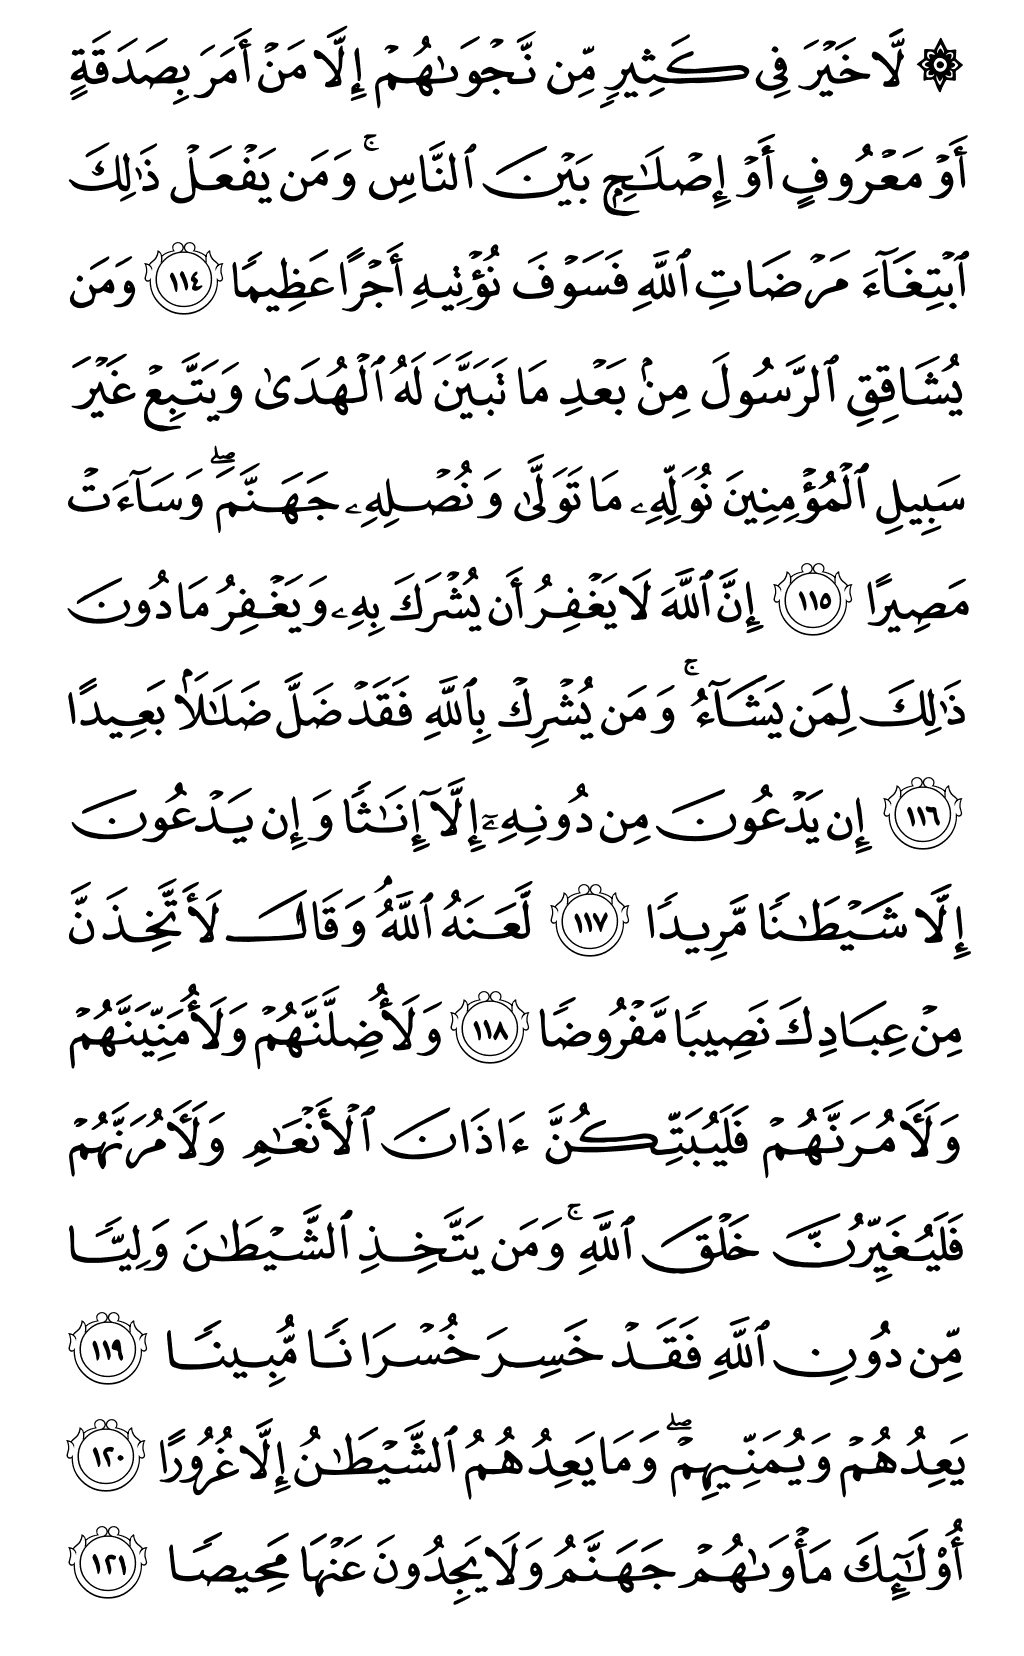 الصفحة رقم 97 من القرآن الكريم